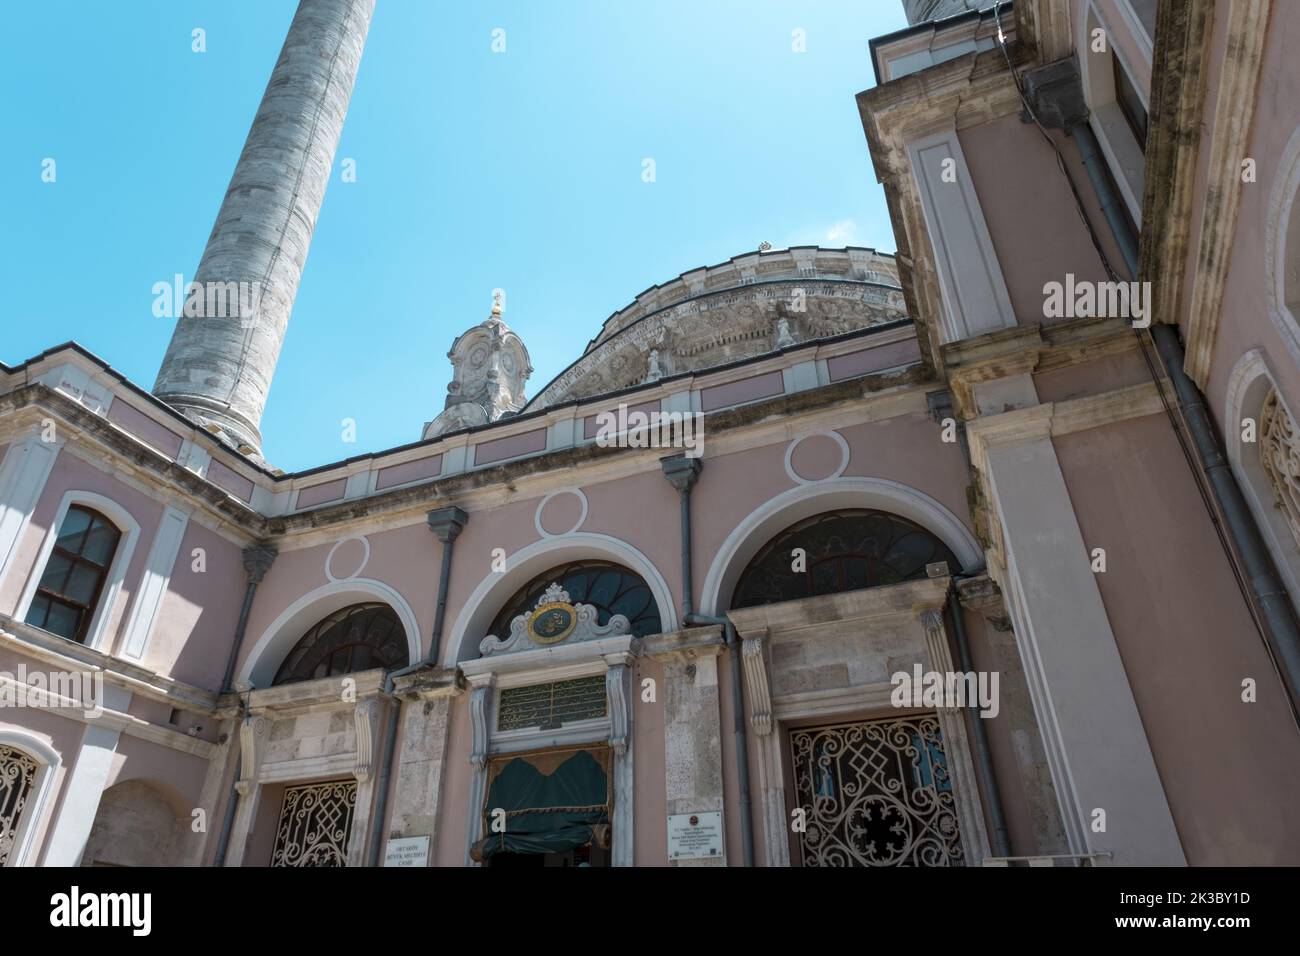 Ortakoy Moschee Eingang mit Minaretten und Kuppel Draufsicht mit offenem Himmel, schöne Landschaft mit Moschee, bekannt als Büyük Mecidiye Camii Stockfoto